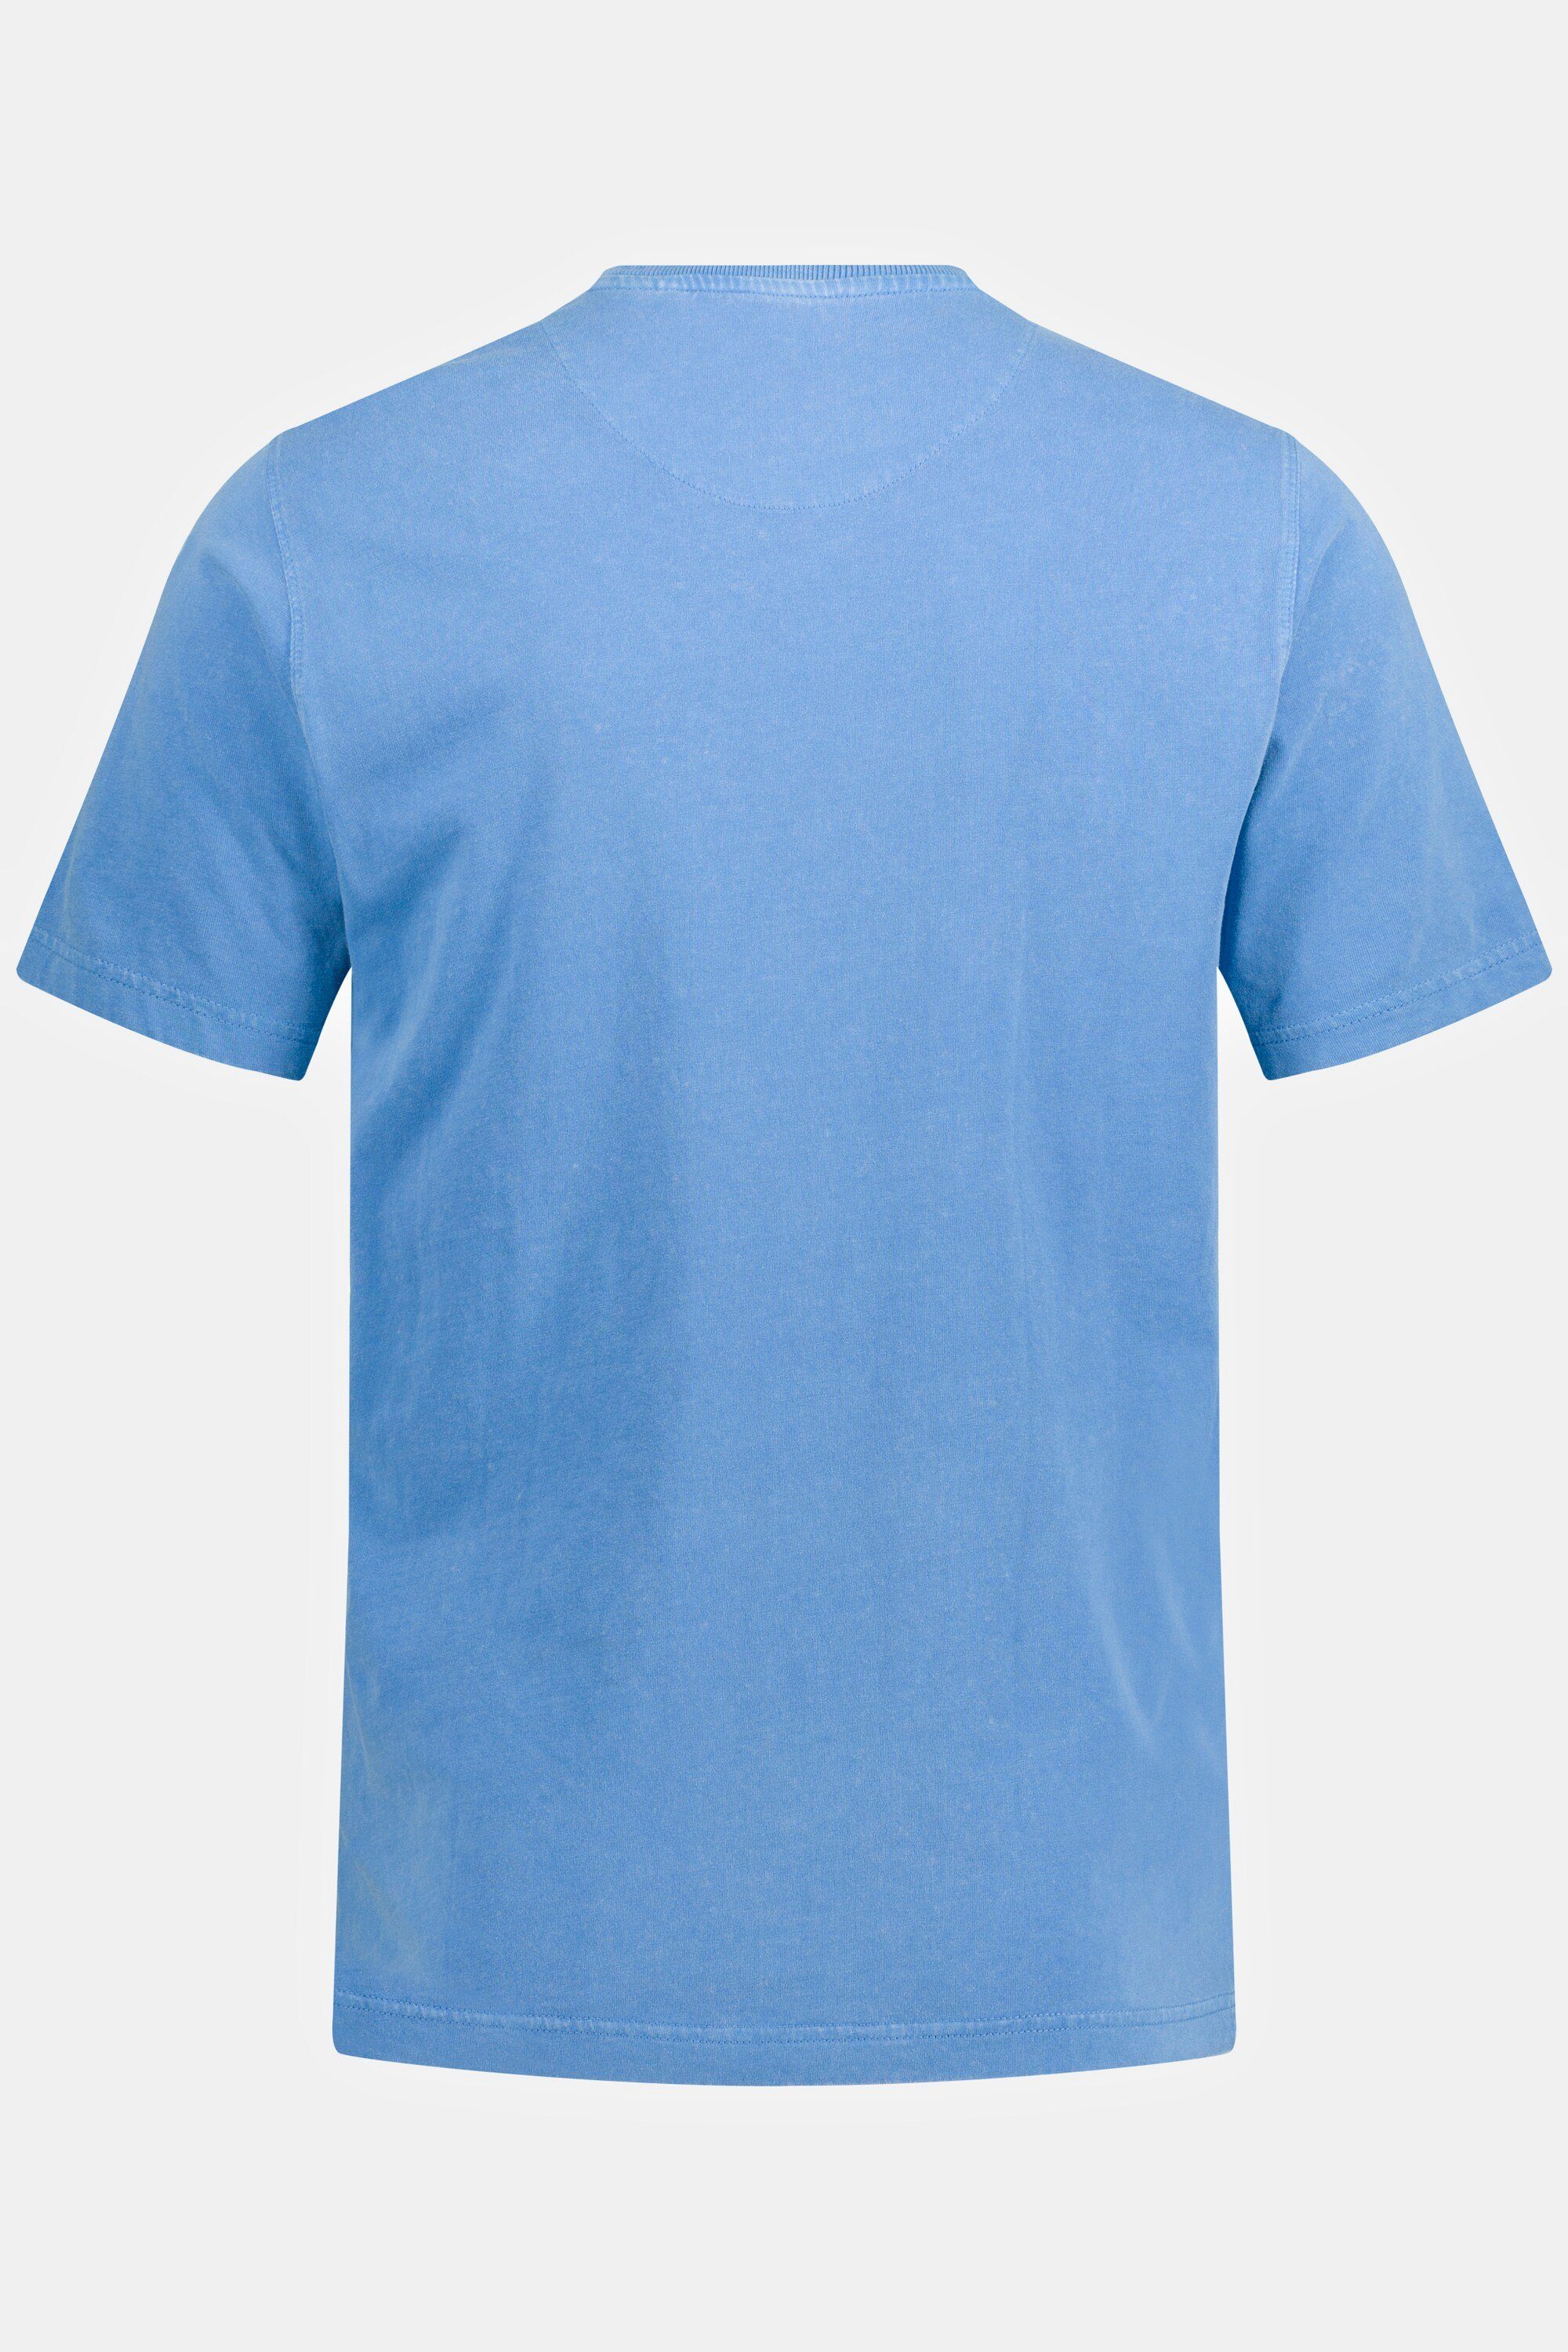 blau T-Shirt Rundhals Halbarm Brusttasche T-Shirt JP1880